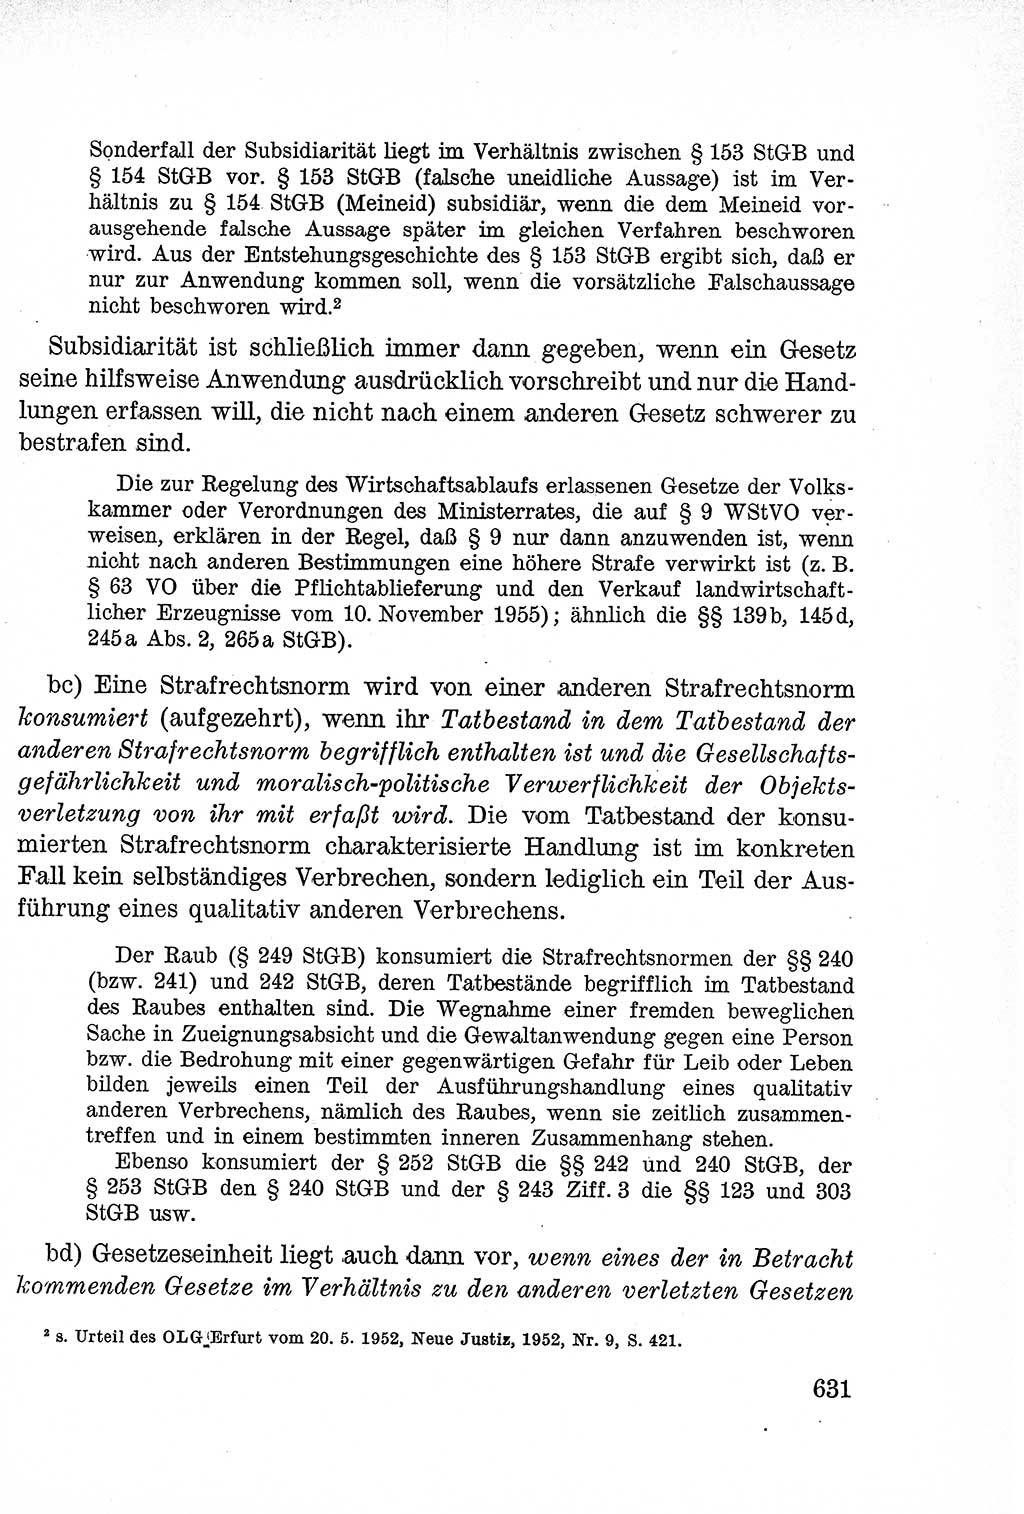 Lehrbuch des Strafrechts der Deutschen Demokratischen Republik (DDR), Allgemeiner Teil 1957, Seite 631 (Lb. Strafr. DDR AT 1957, S. 631)